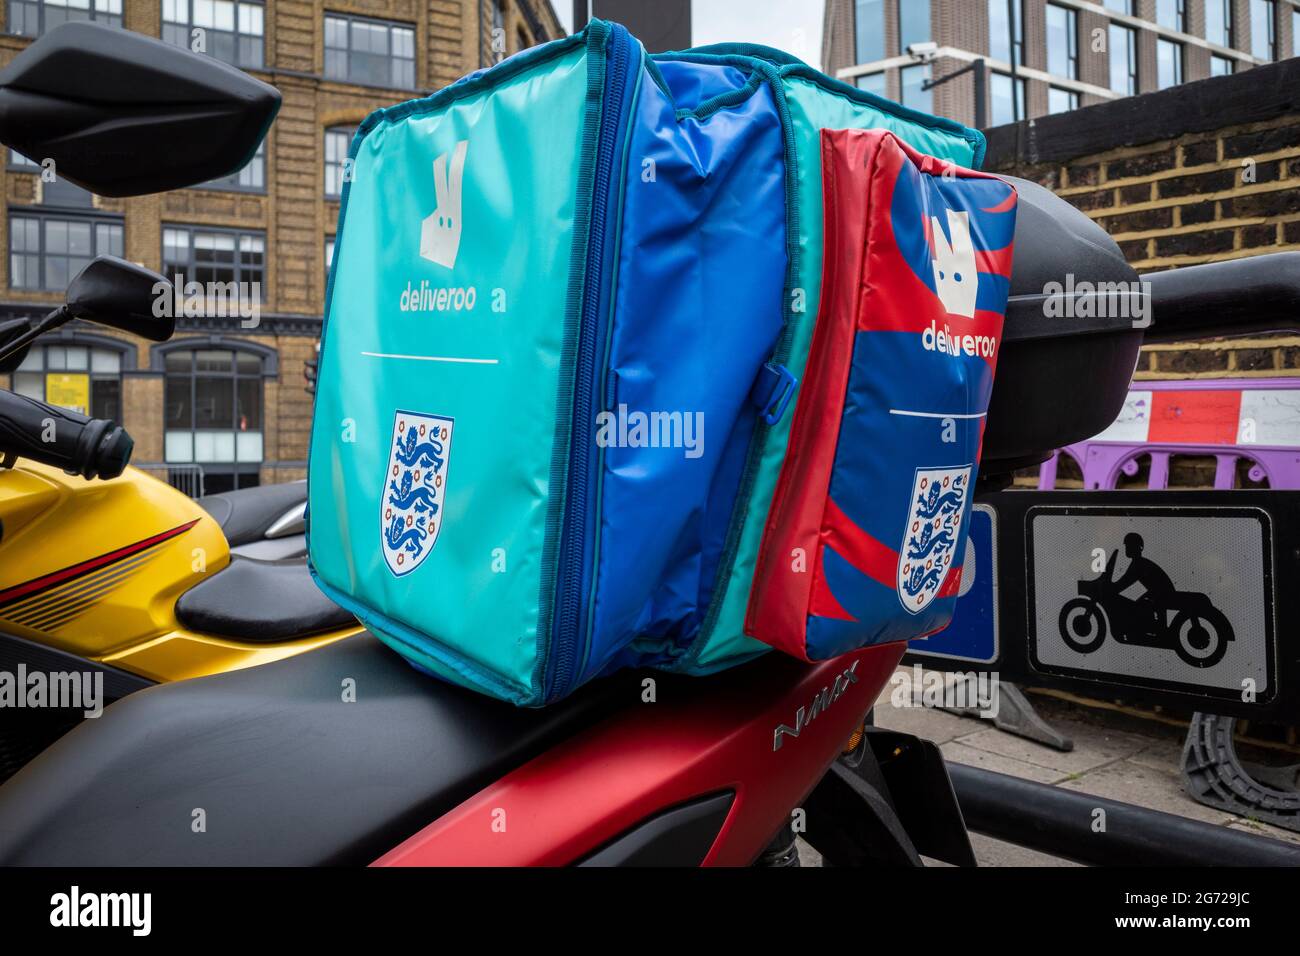 Londra, Regno Unito. 10 luglio 2021. Un vettore di consegna Deliveroo su  una motocicletta è decorato con i tre Lions a sostegno della nazionale di  calcio inglese. L'Italia gioca domani sera in